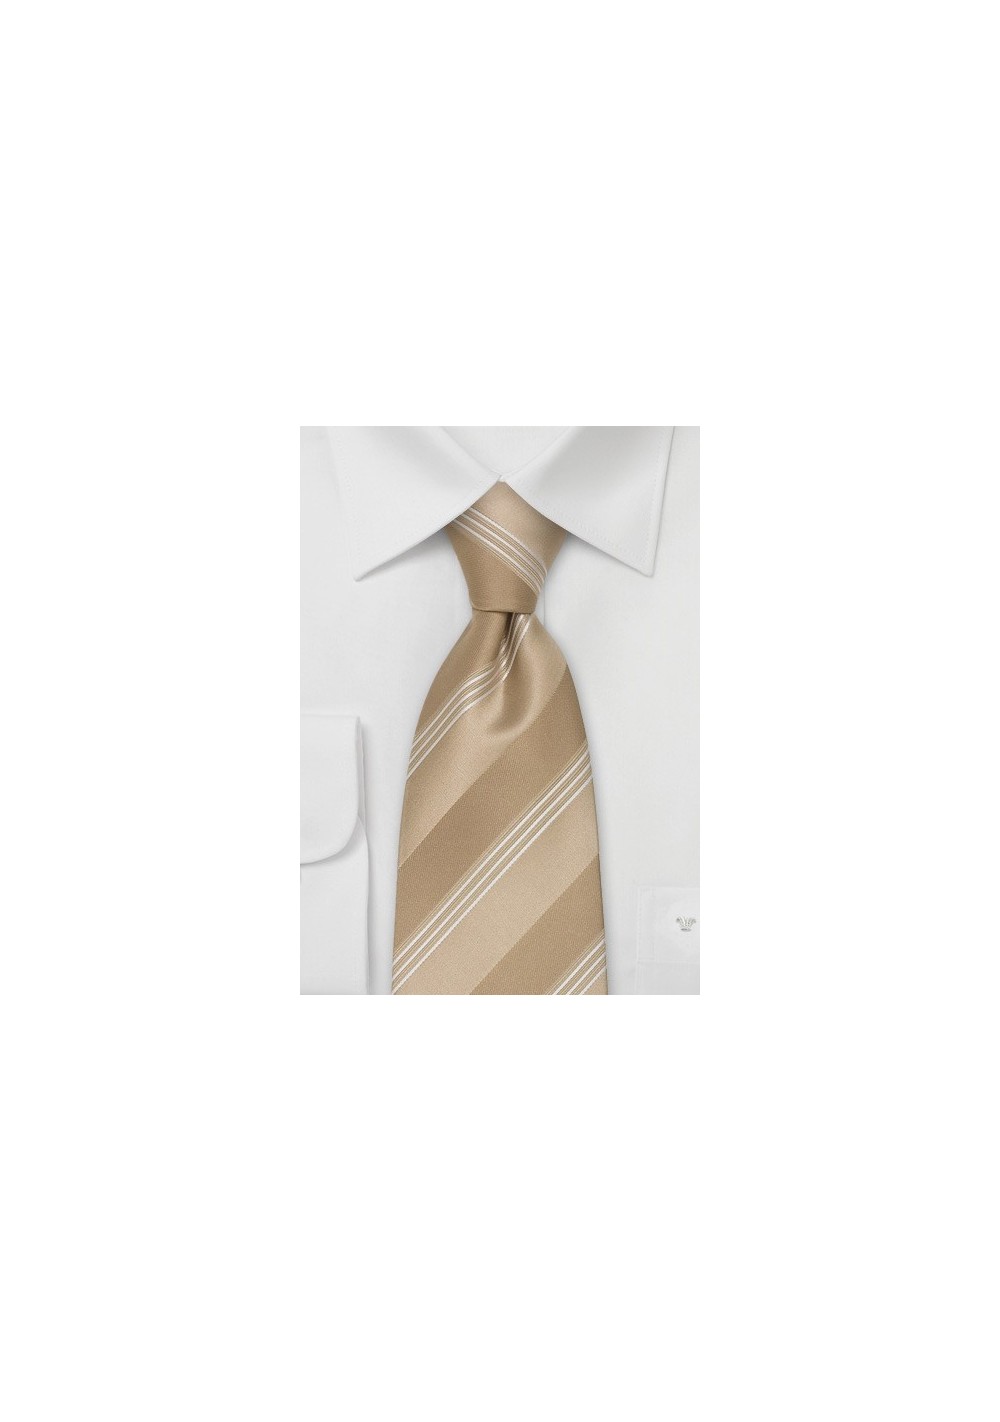 Brand Name Extra Long Ties - XL Designer Silk Tie by Cavallieri